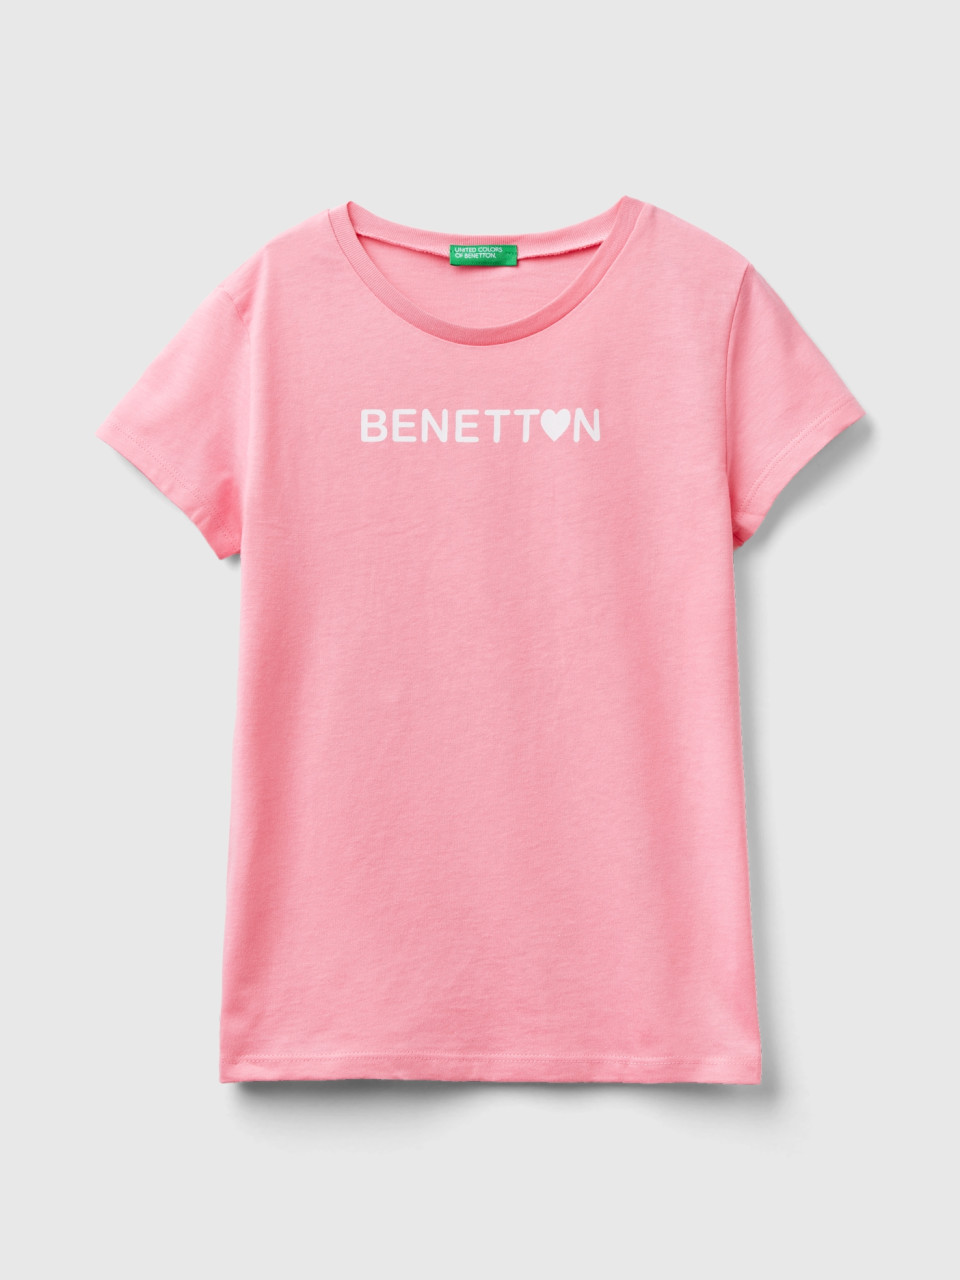 Benetton, T-shirt Mit Logo 100% Baumwolle, Pink, female